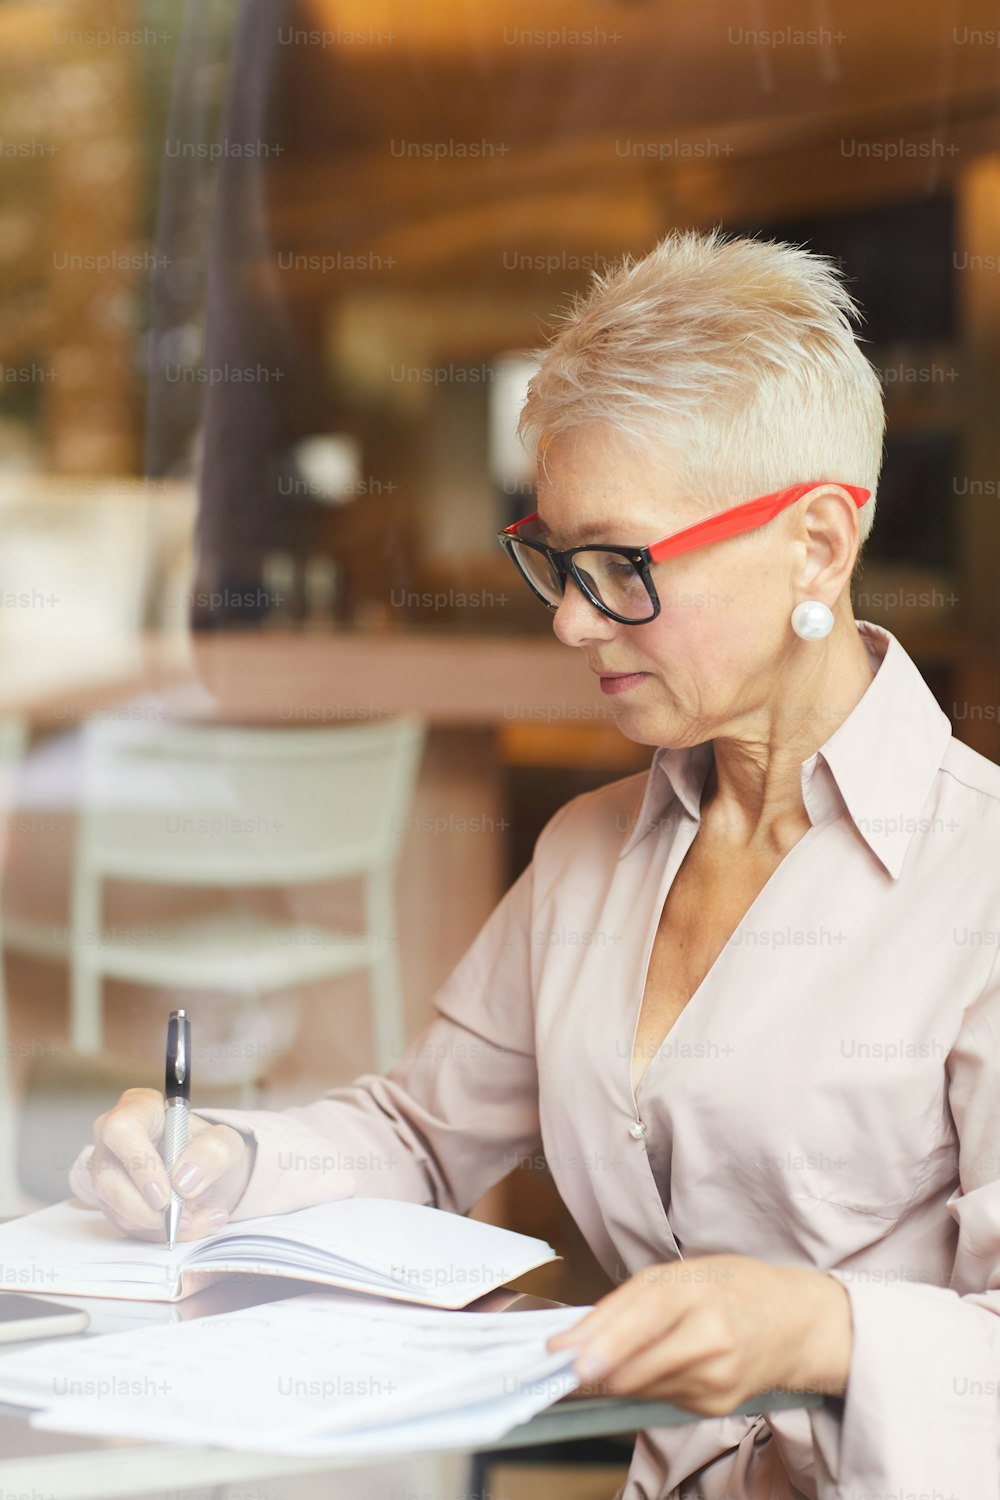 Donna d'affari matura concentrata con capelli corti biondi che indossa occhiali da vista seduta al tavolo e scrive qualcosa nei documenti nel caffè